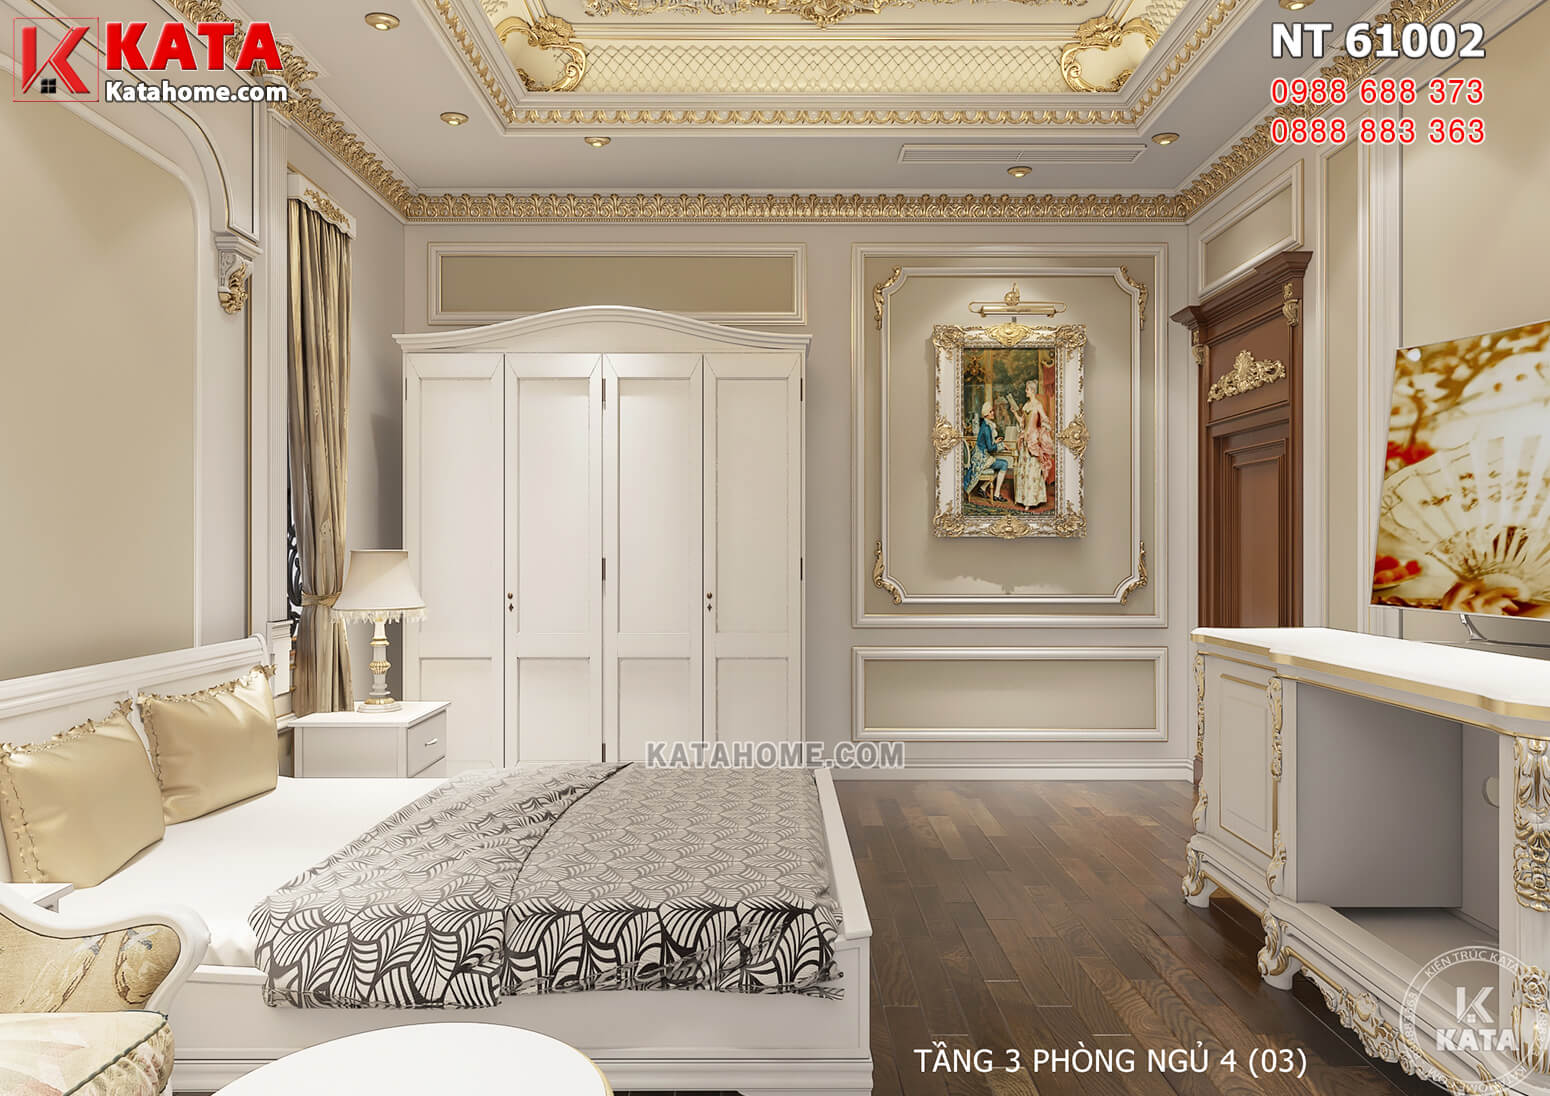 Hình ảnh: Thiết kế nội thất tân cổ điển đẹp dành cho phòng ngủ cậu con trai